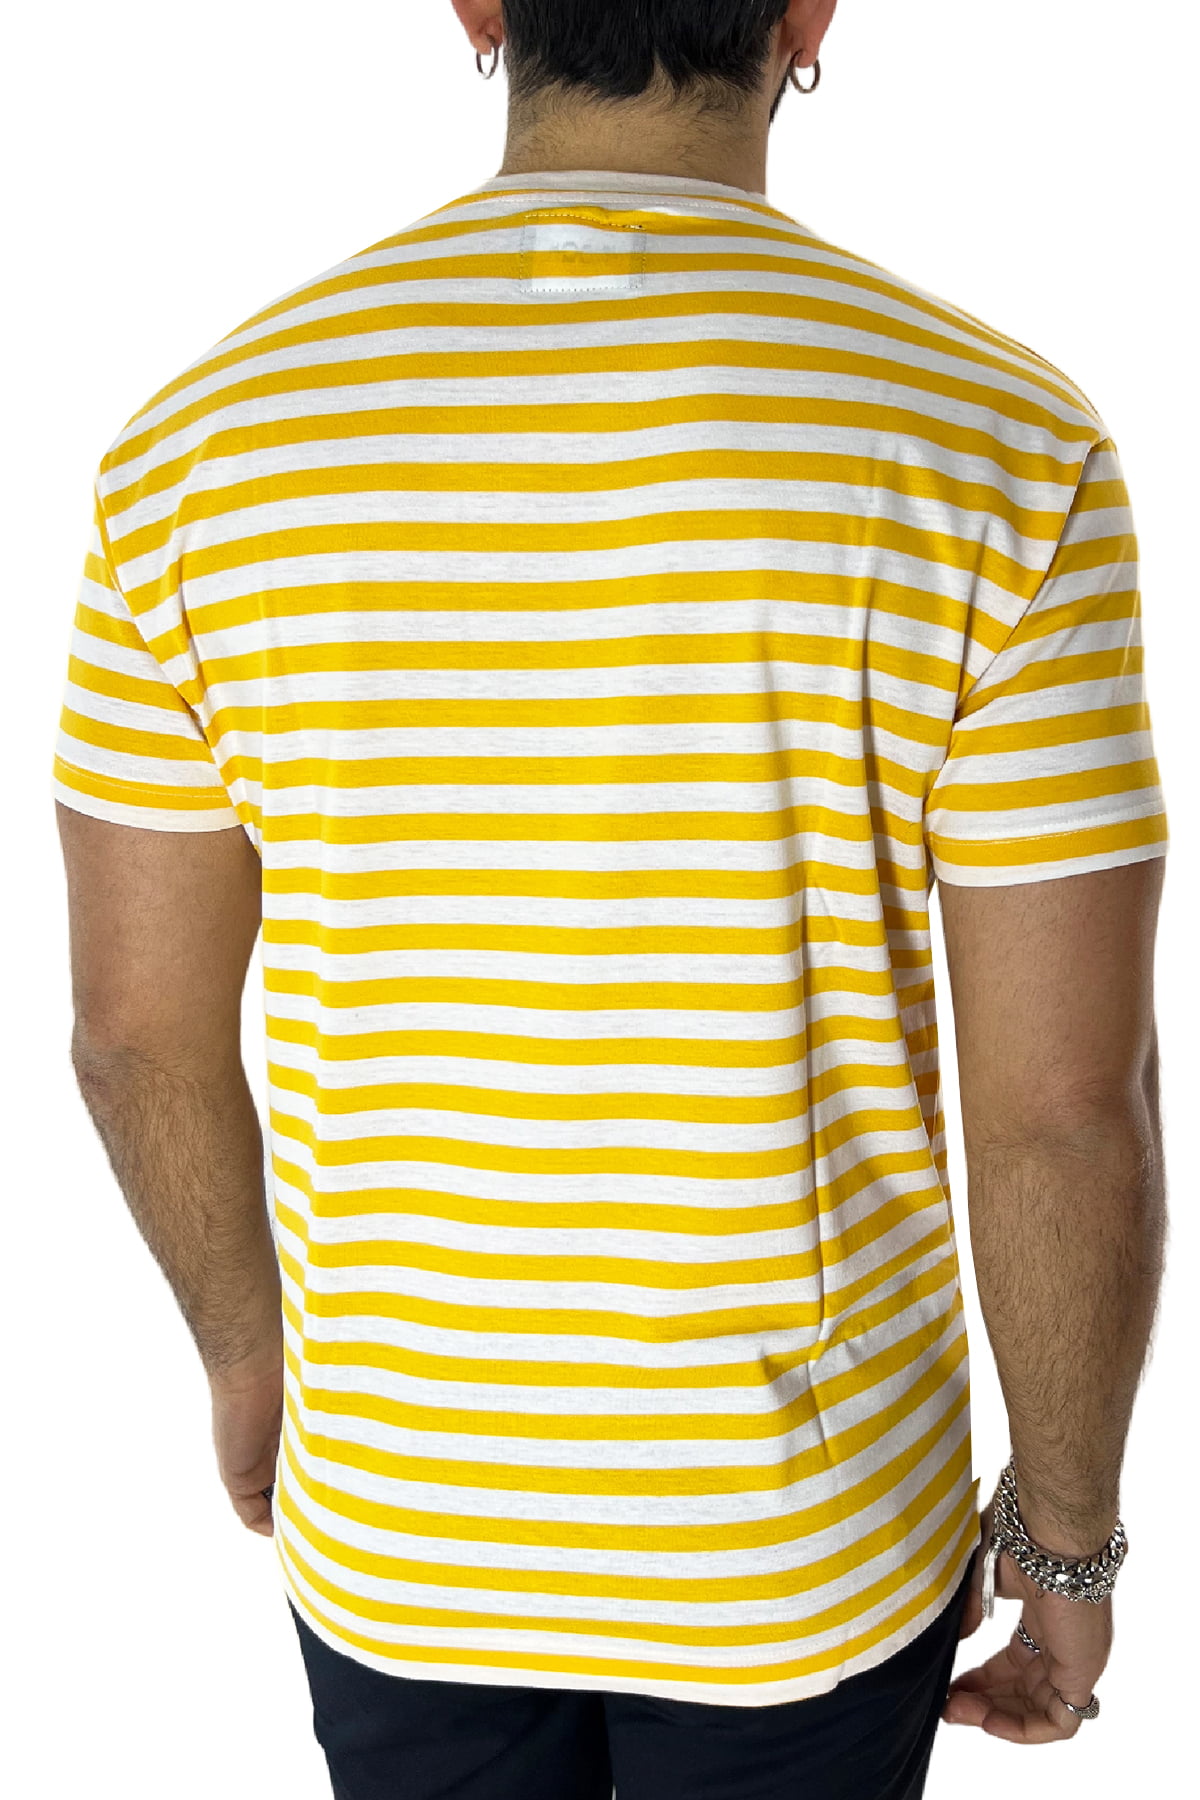 T-shirt girocollo da uomo gialla rigata mezze maniche slim fit made in italy